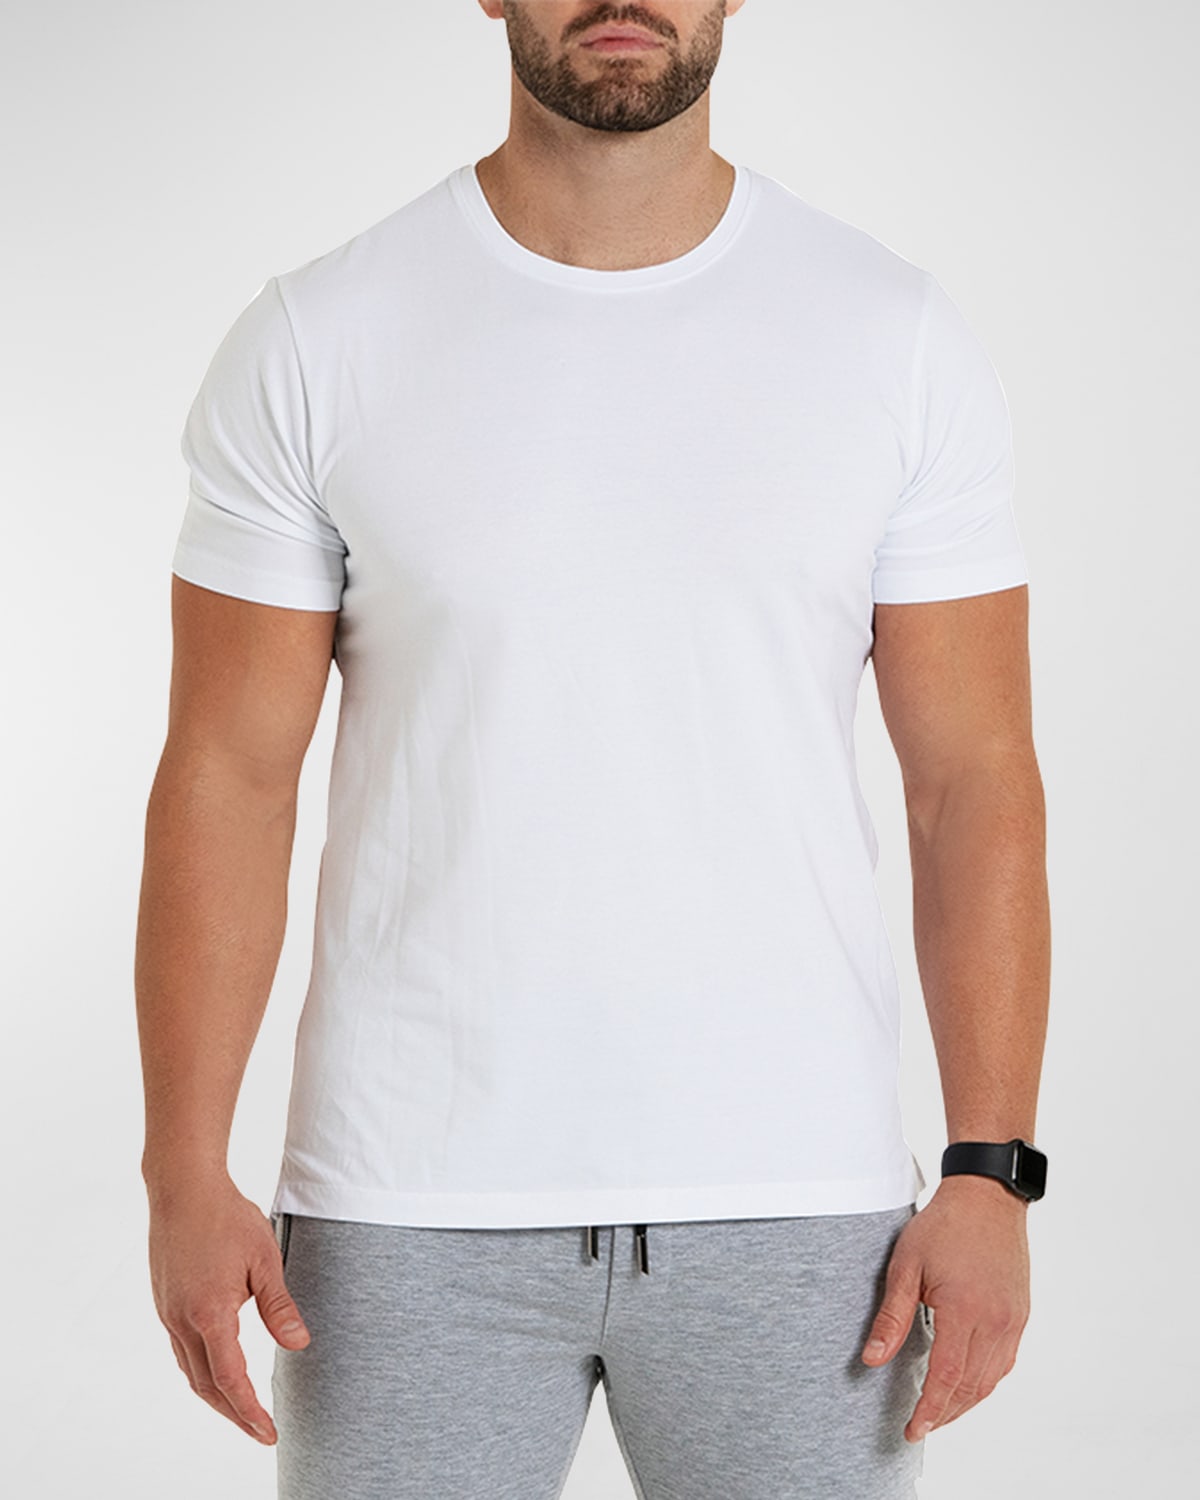 Maceoo Men's Simple T-Shirt